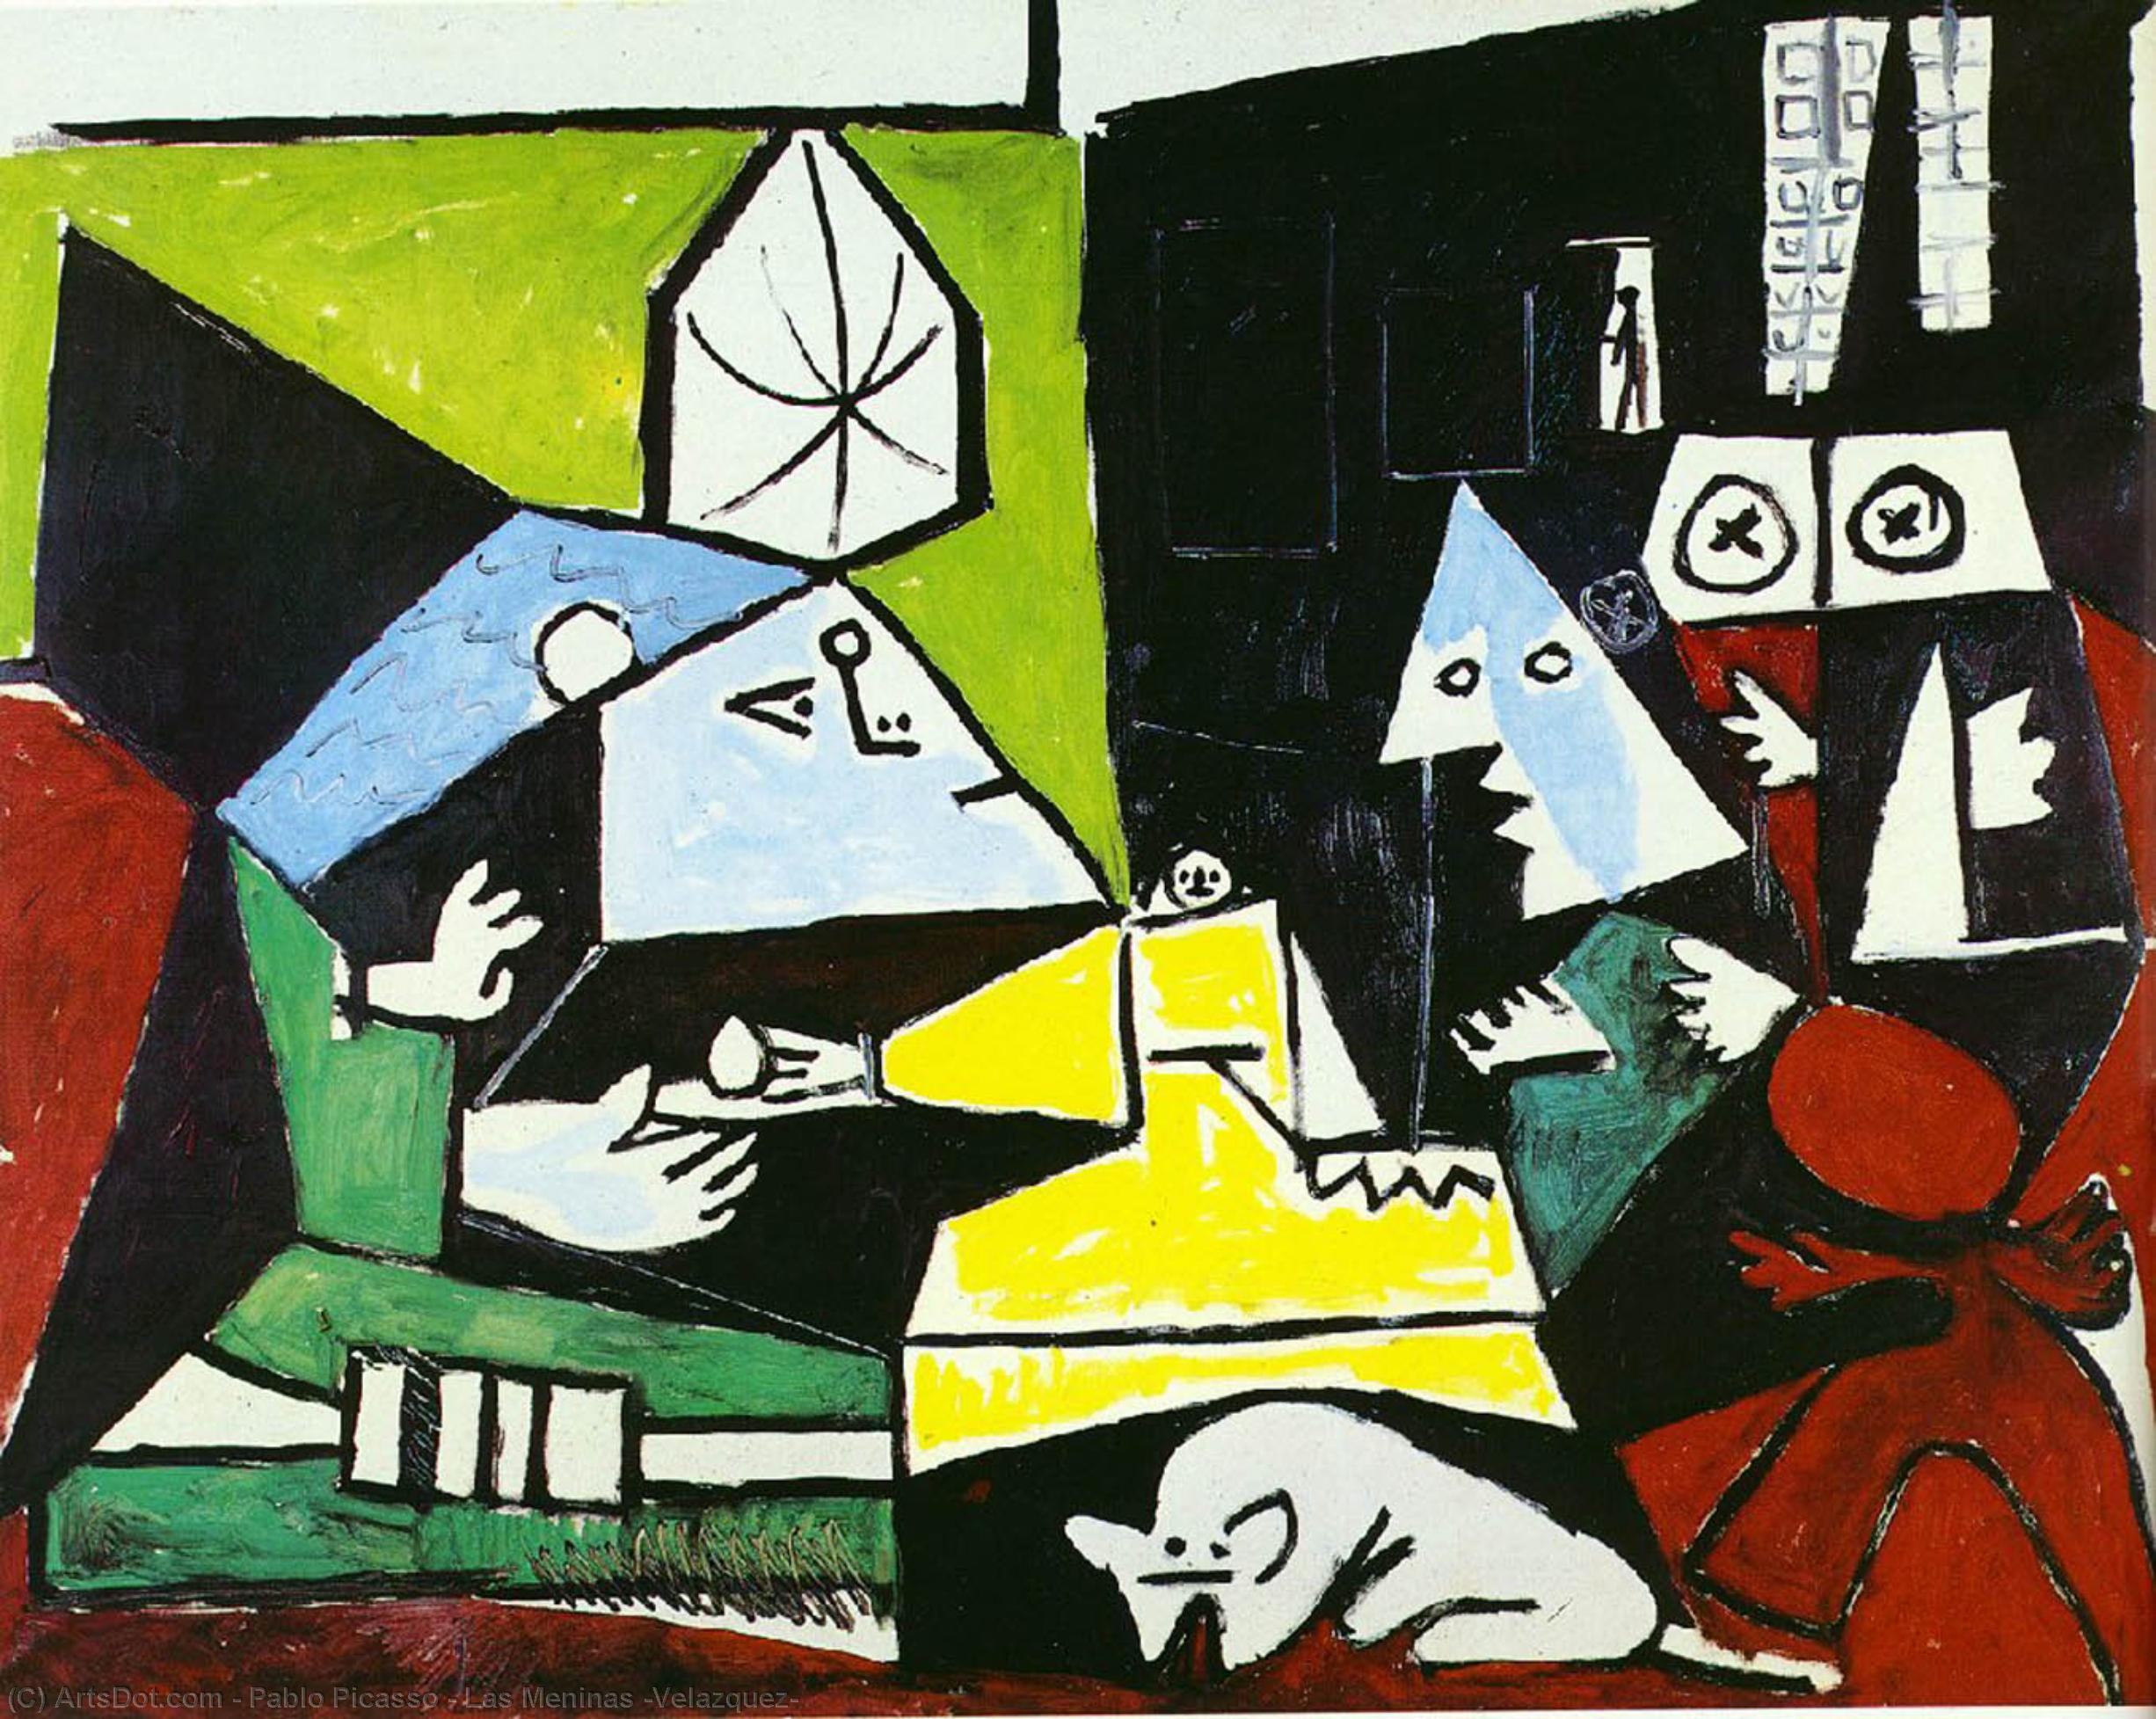 Wikoo.org - موسوعة الفنون الجميلة - اللوحة، العمل الفني Pablo Picasso - Las Meninas (Velazquez)